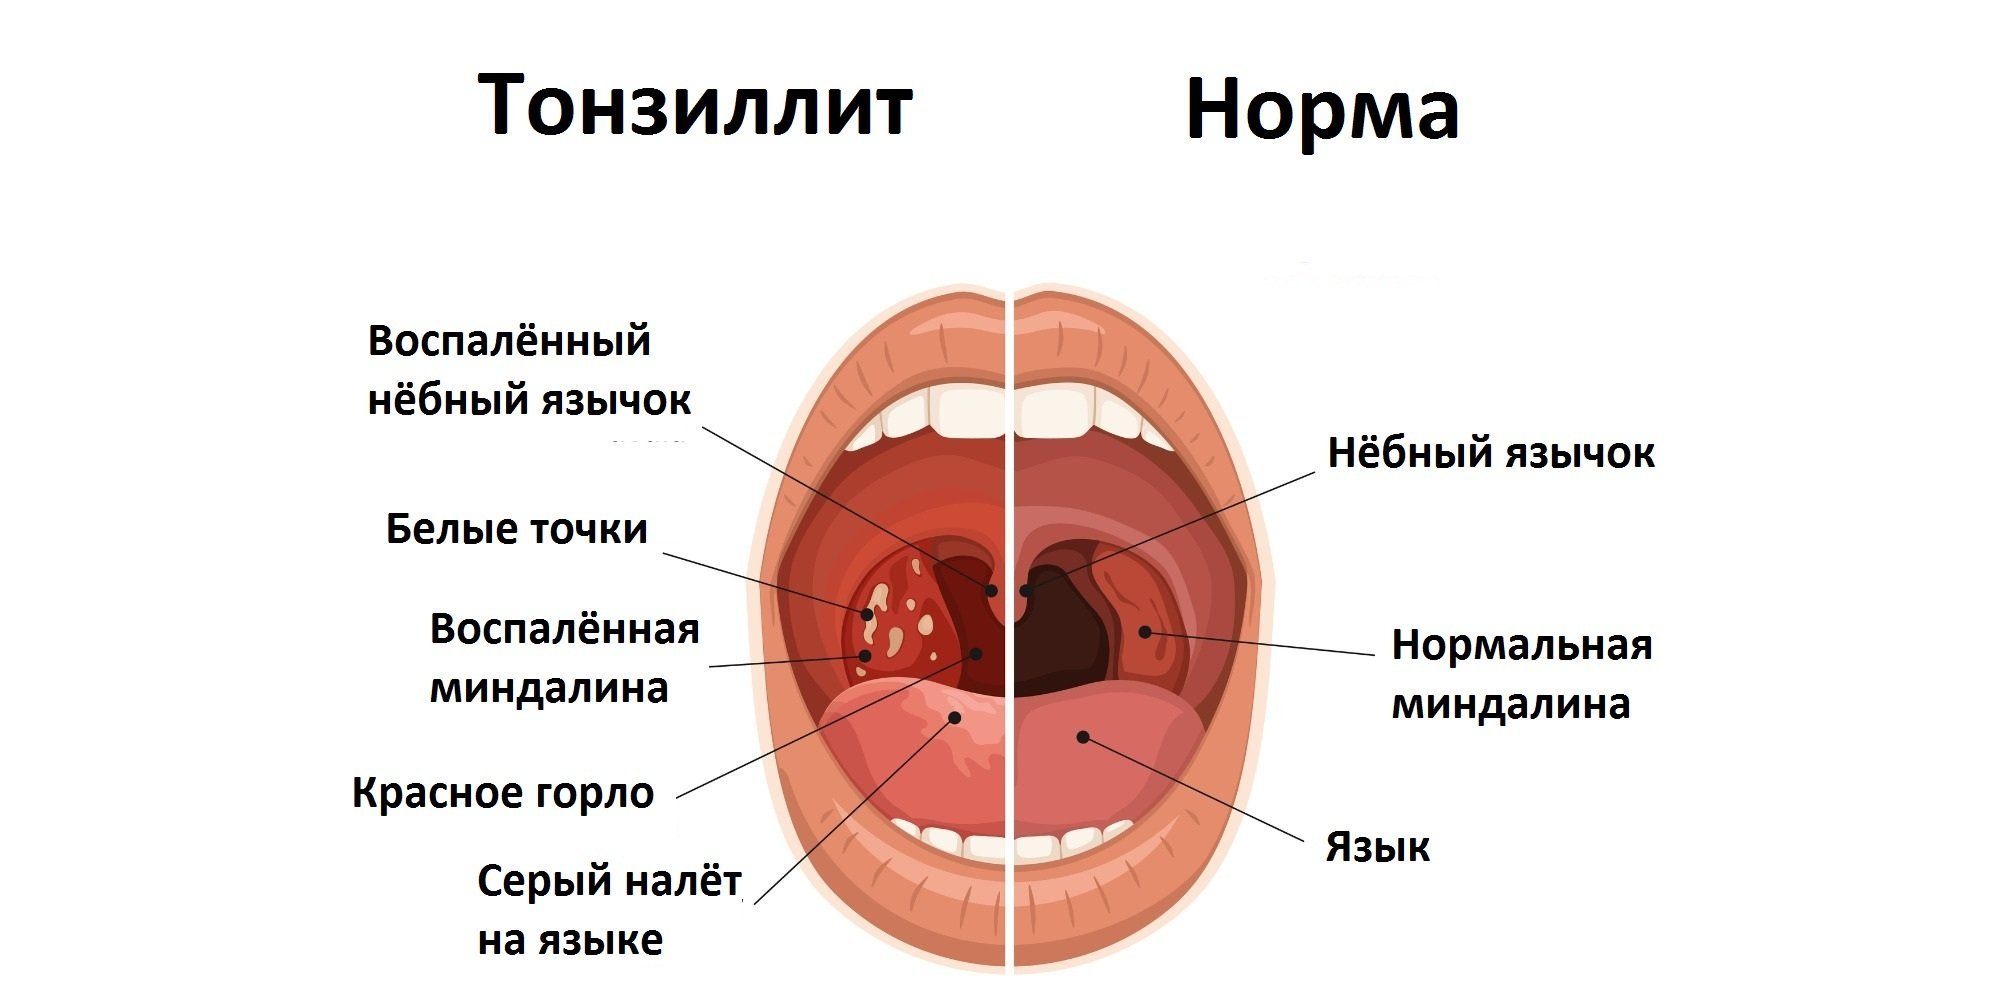 Что означает кровь во рту. Небные миндалины хронический тонзиллит. Клинические симптомы тонзиллит. Хронический тонзиллит вид гланд.